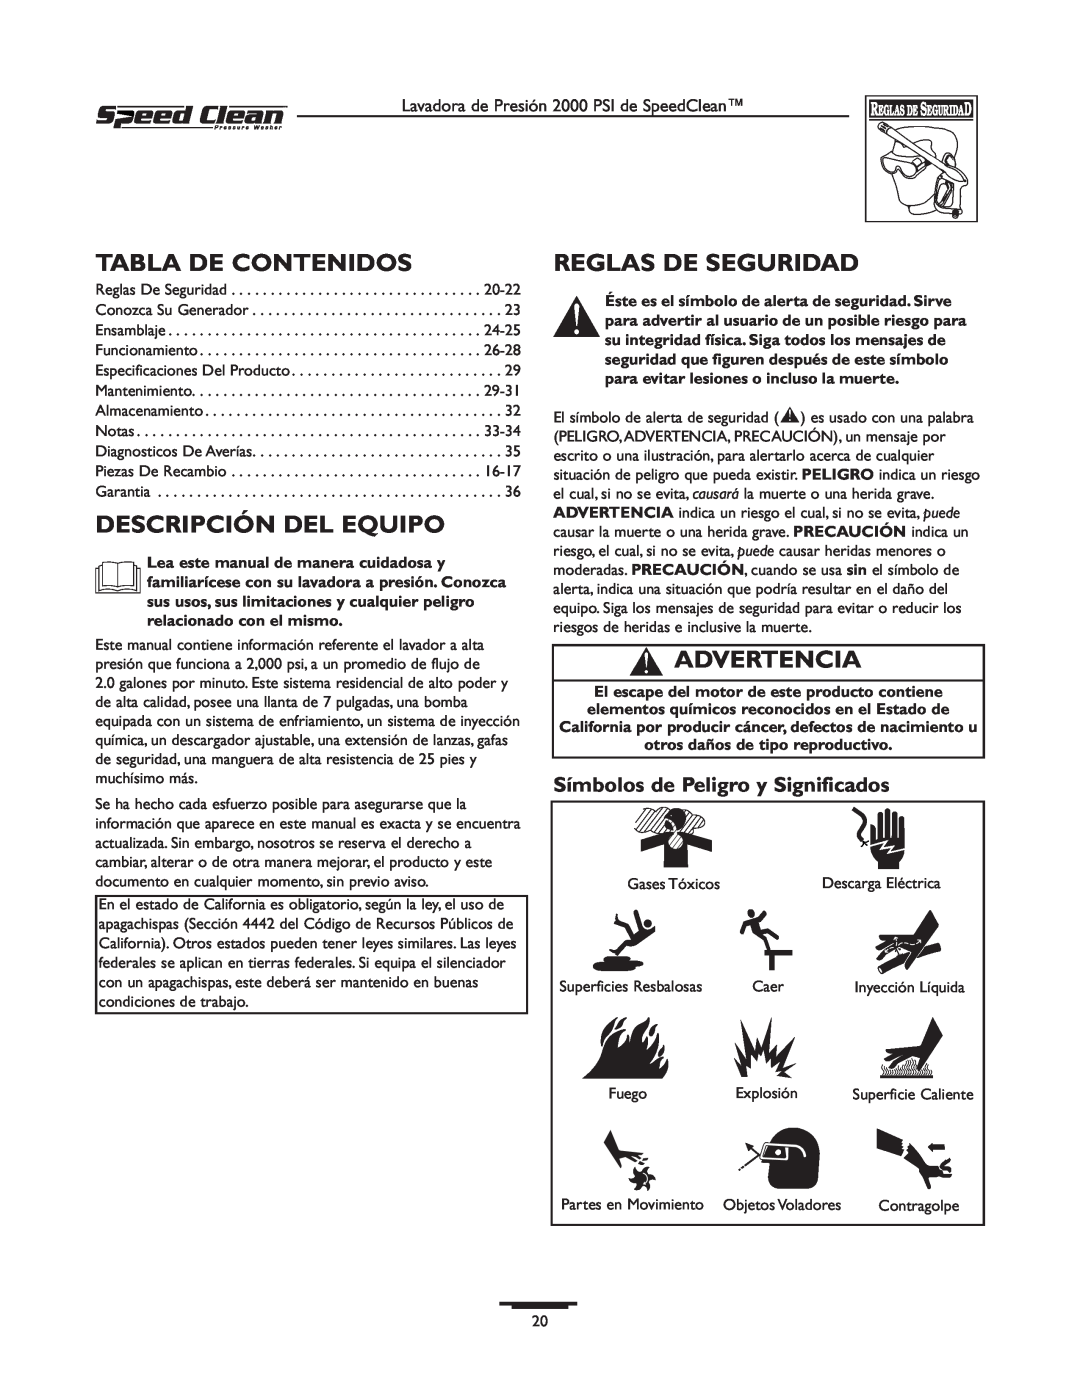 Briggs & Stratton 020211-0 owner manual Tabla De Contenidos, Descripción Del Equipo, Reglas De Seguridad, Advertencia 